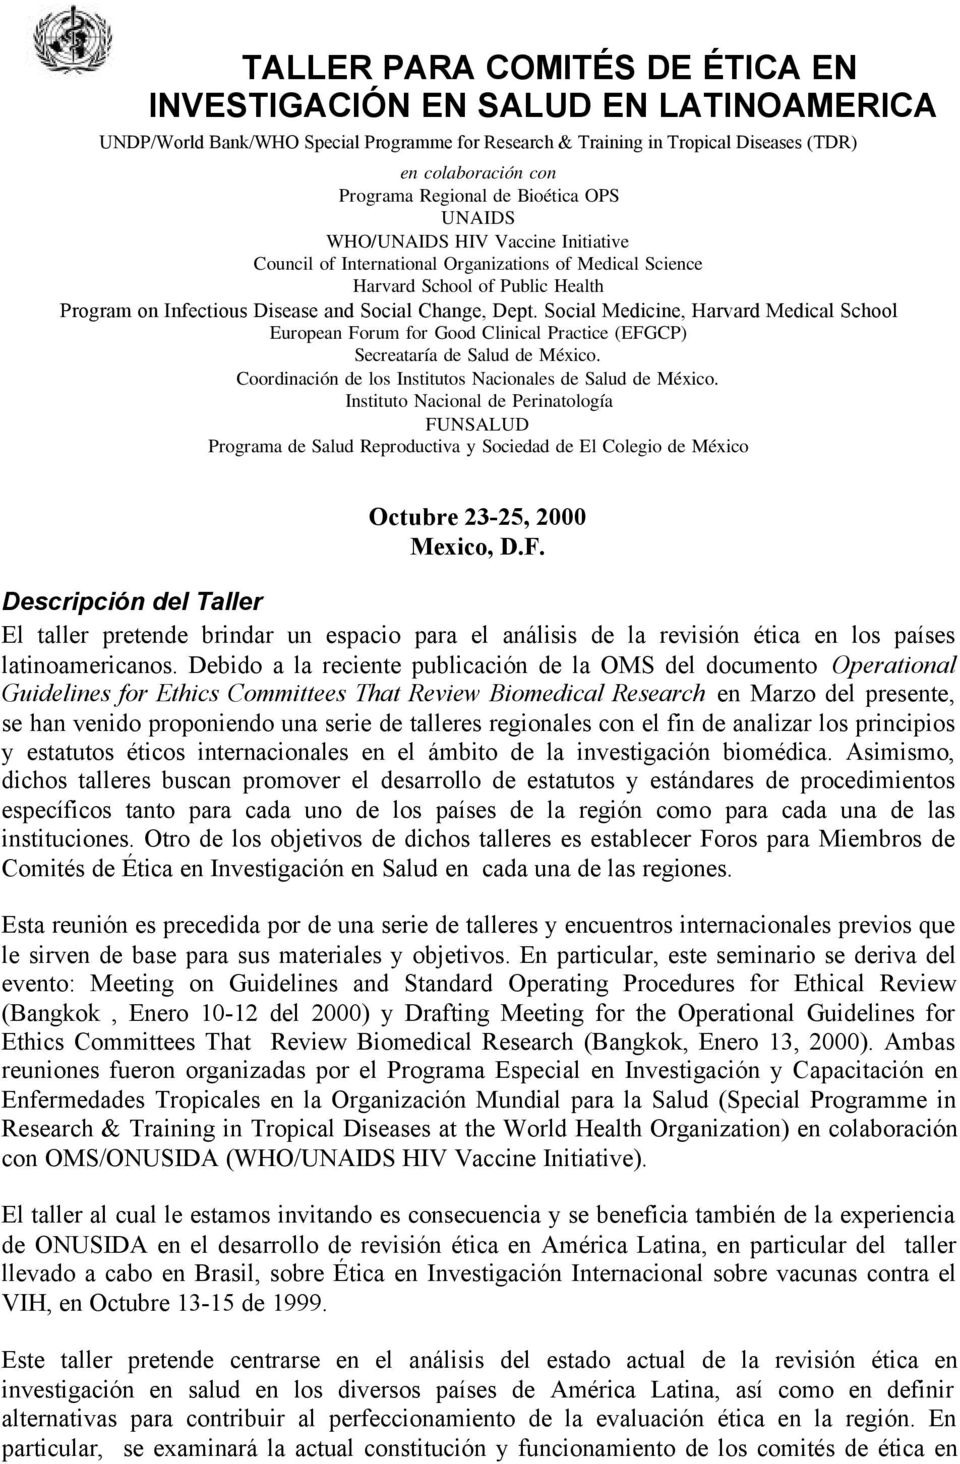 Dept. Social Medicine, Harvard Medical School European Forum for Good Clinical Practice (EFGCP) Secreataría de Salud de México. Coordinación de los Institutos Nacionales de Salud de México.